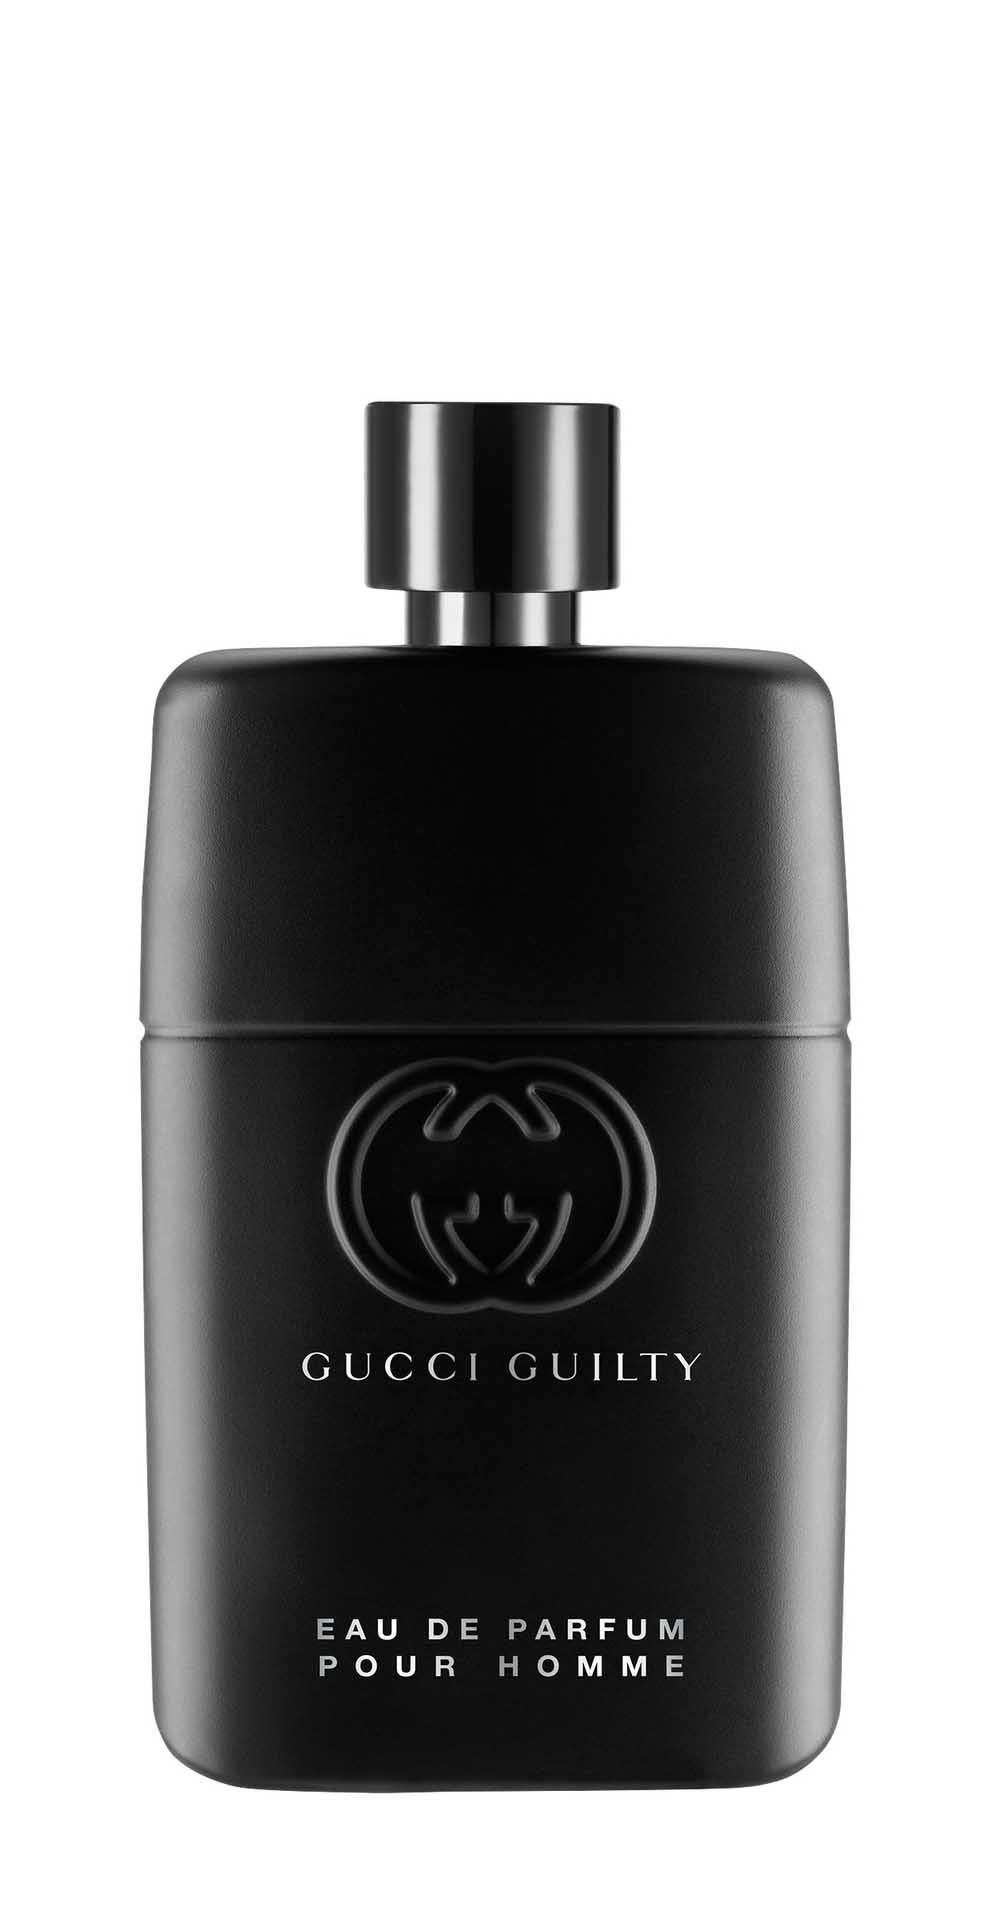 Парфюмерная вода Gucci Guilty Pour Homme Eau de Parfum для мужчин, 90 мл flora by gucci eau de parfum